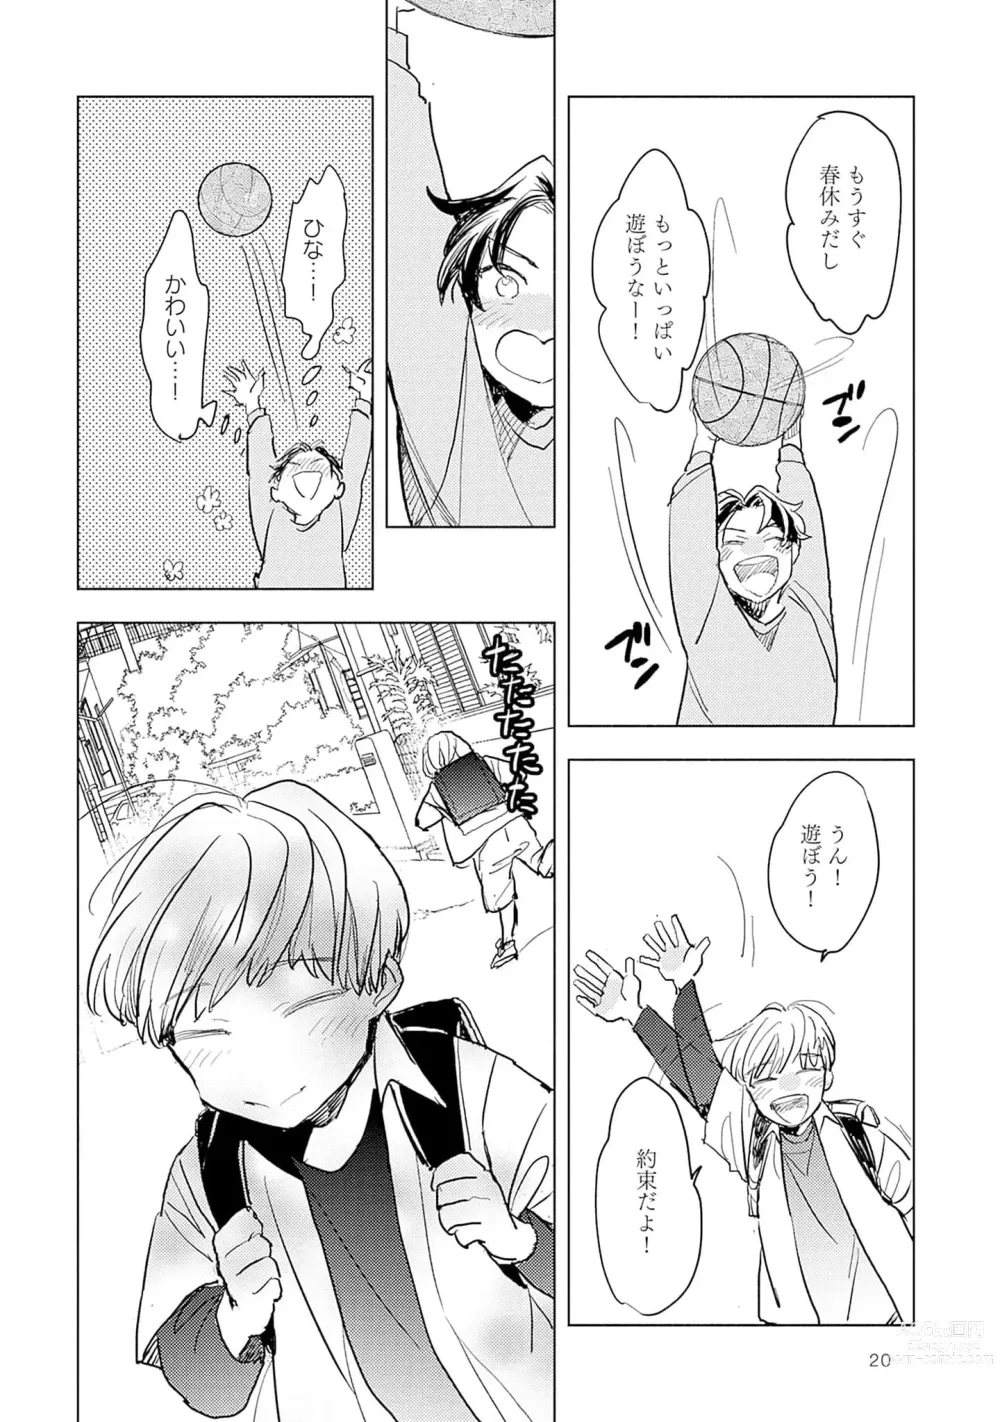 Page 22 of manga Strawberry na Days 2